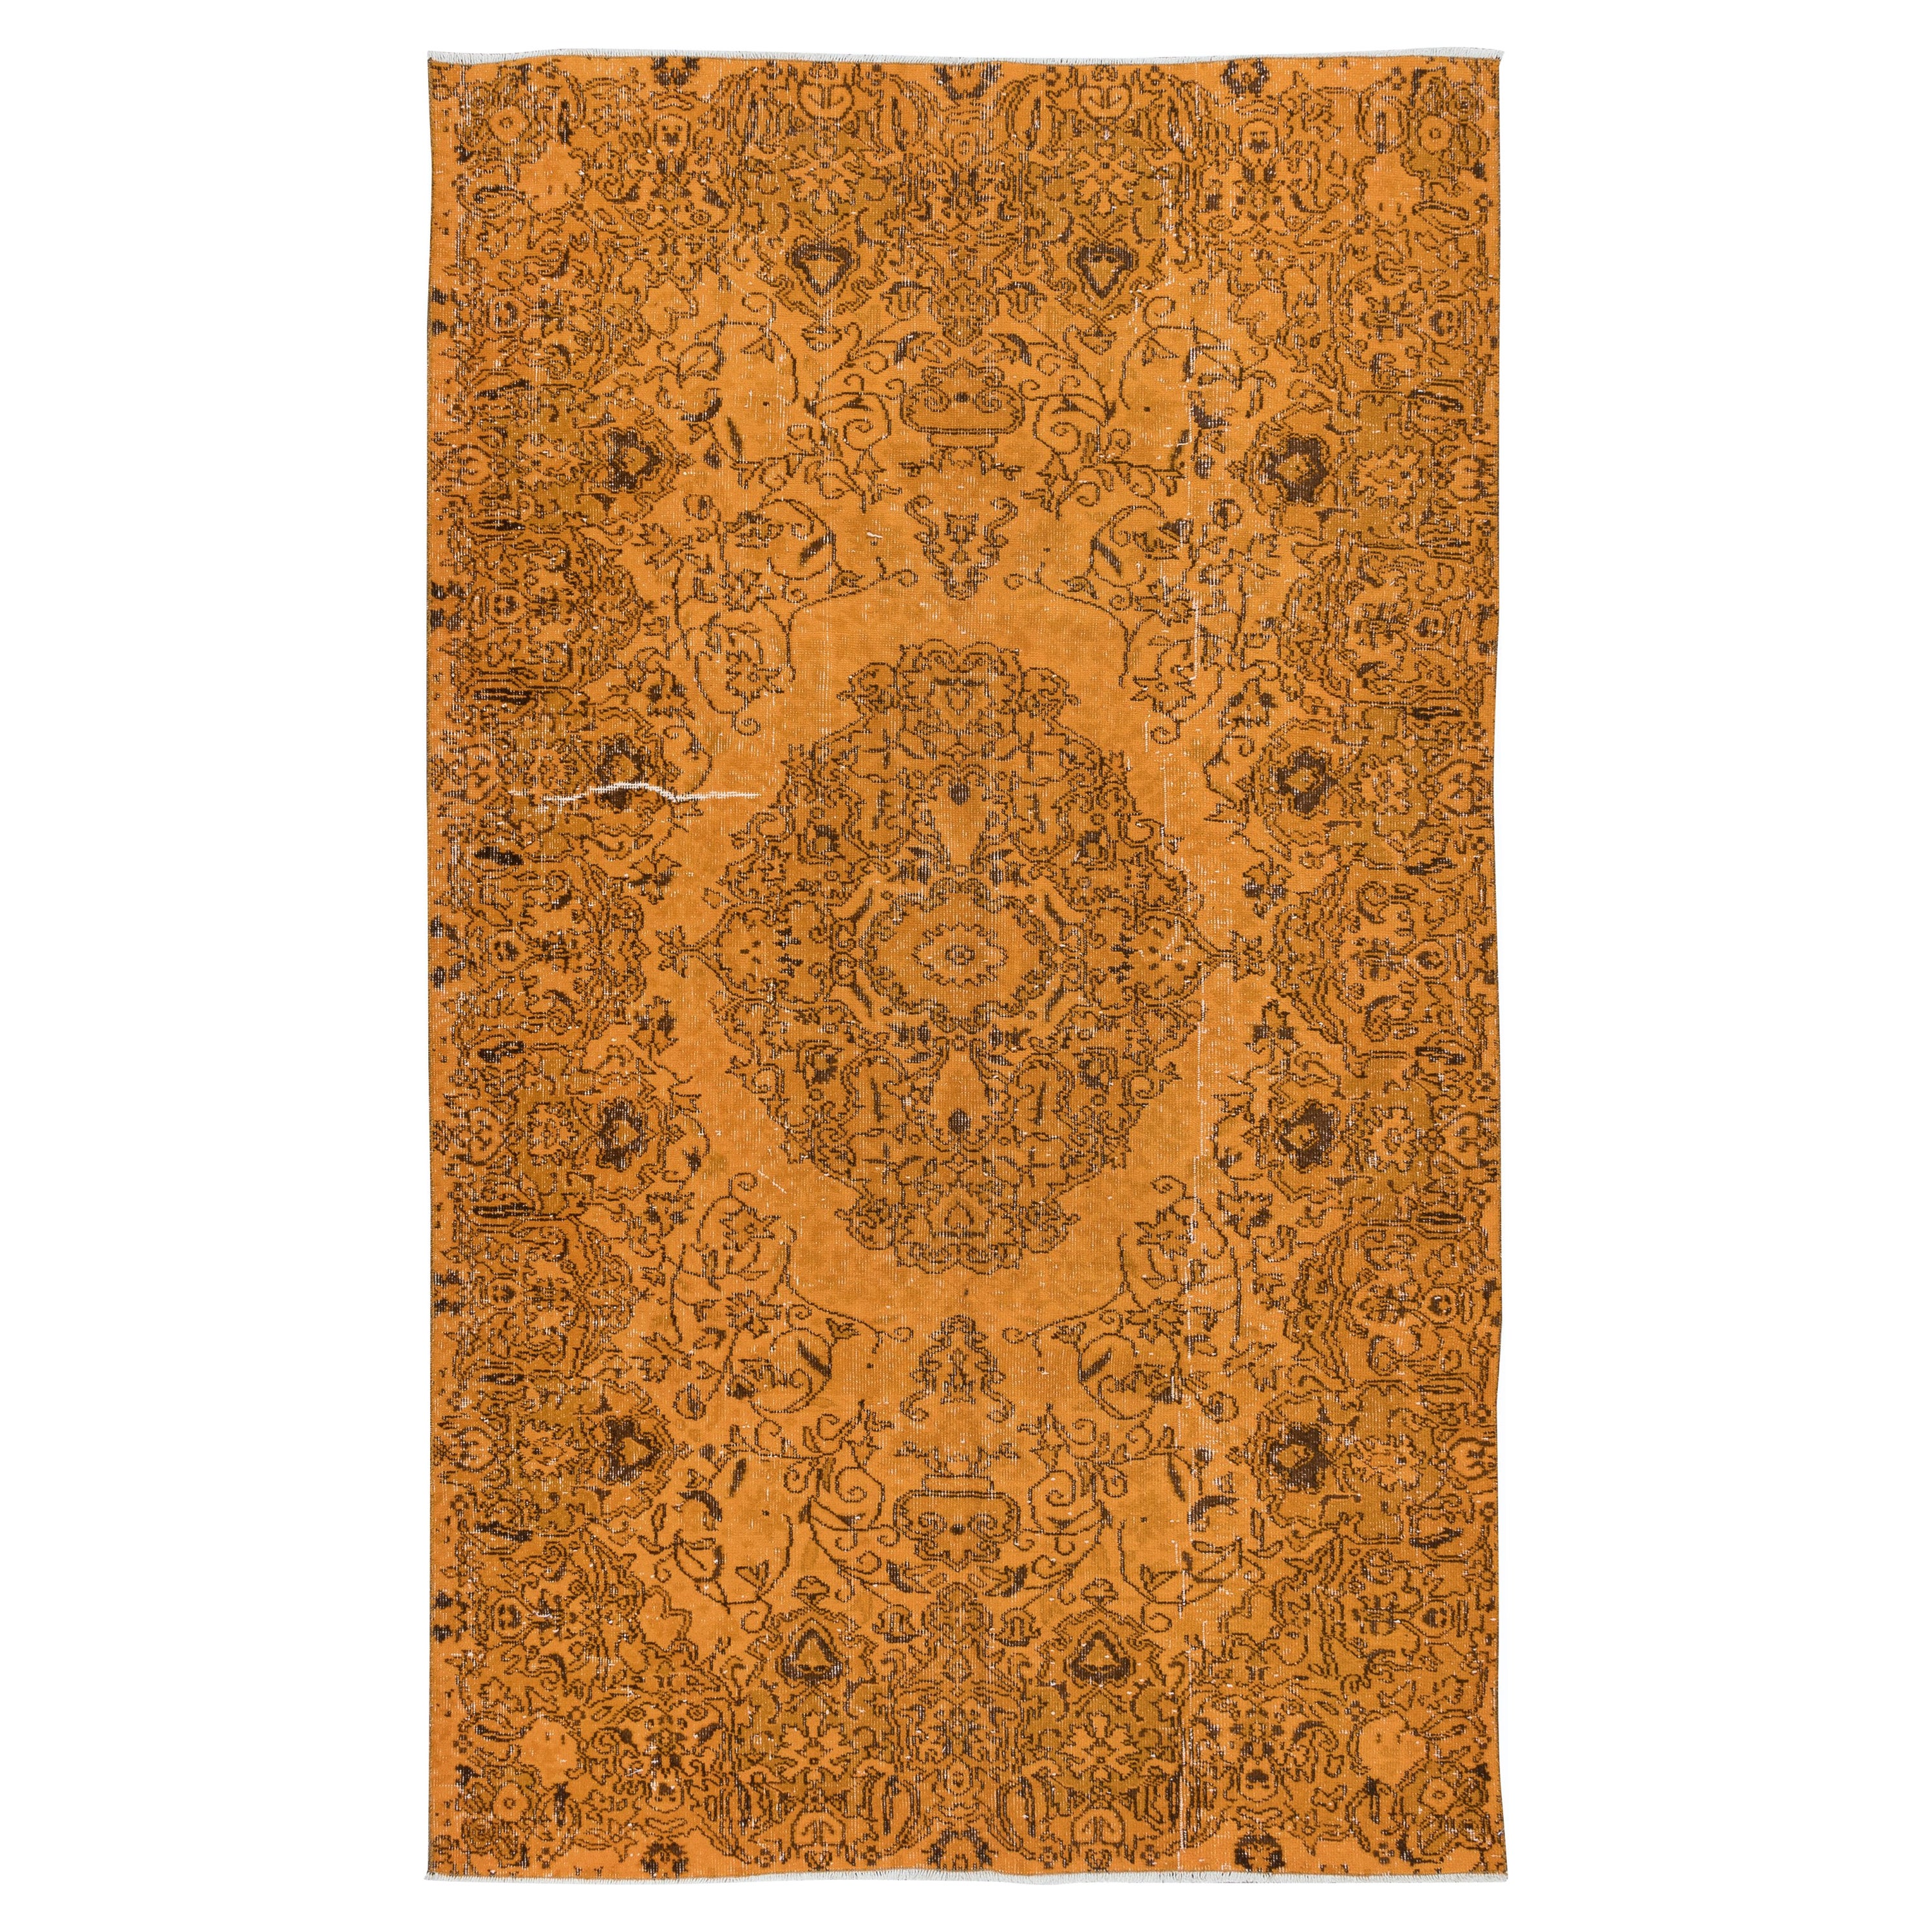 5.2x8.4 Ft Handmade Orange Area Rug from Turkey, Modern Medallion Design Carpet For Sale